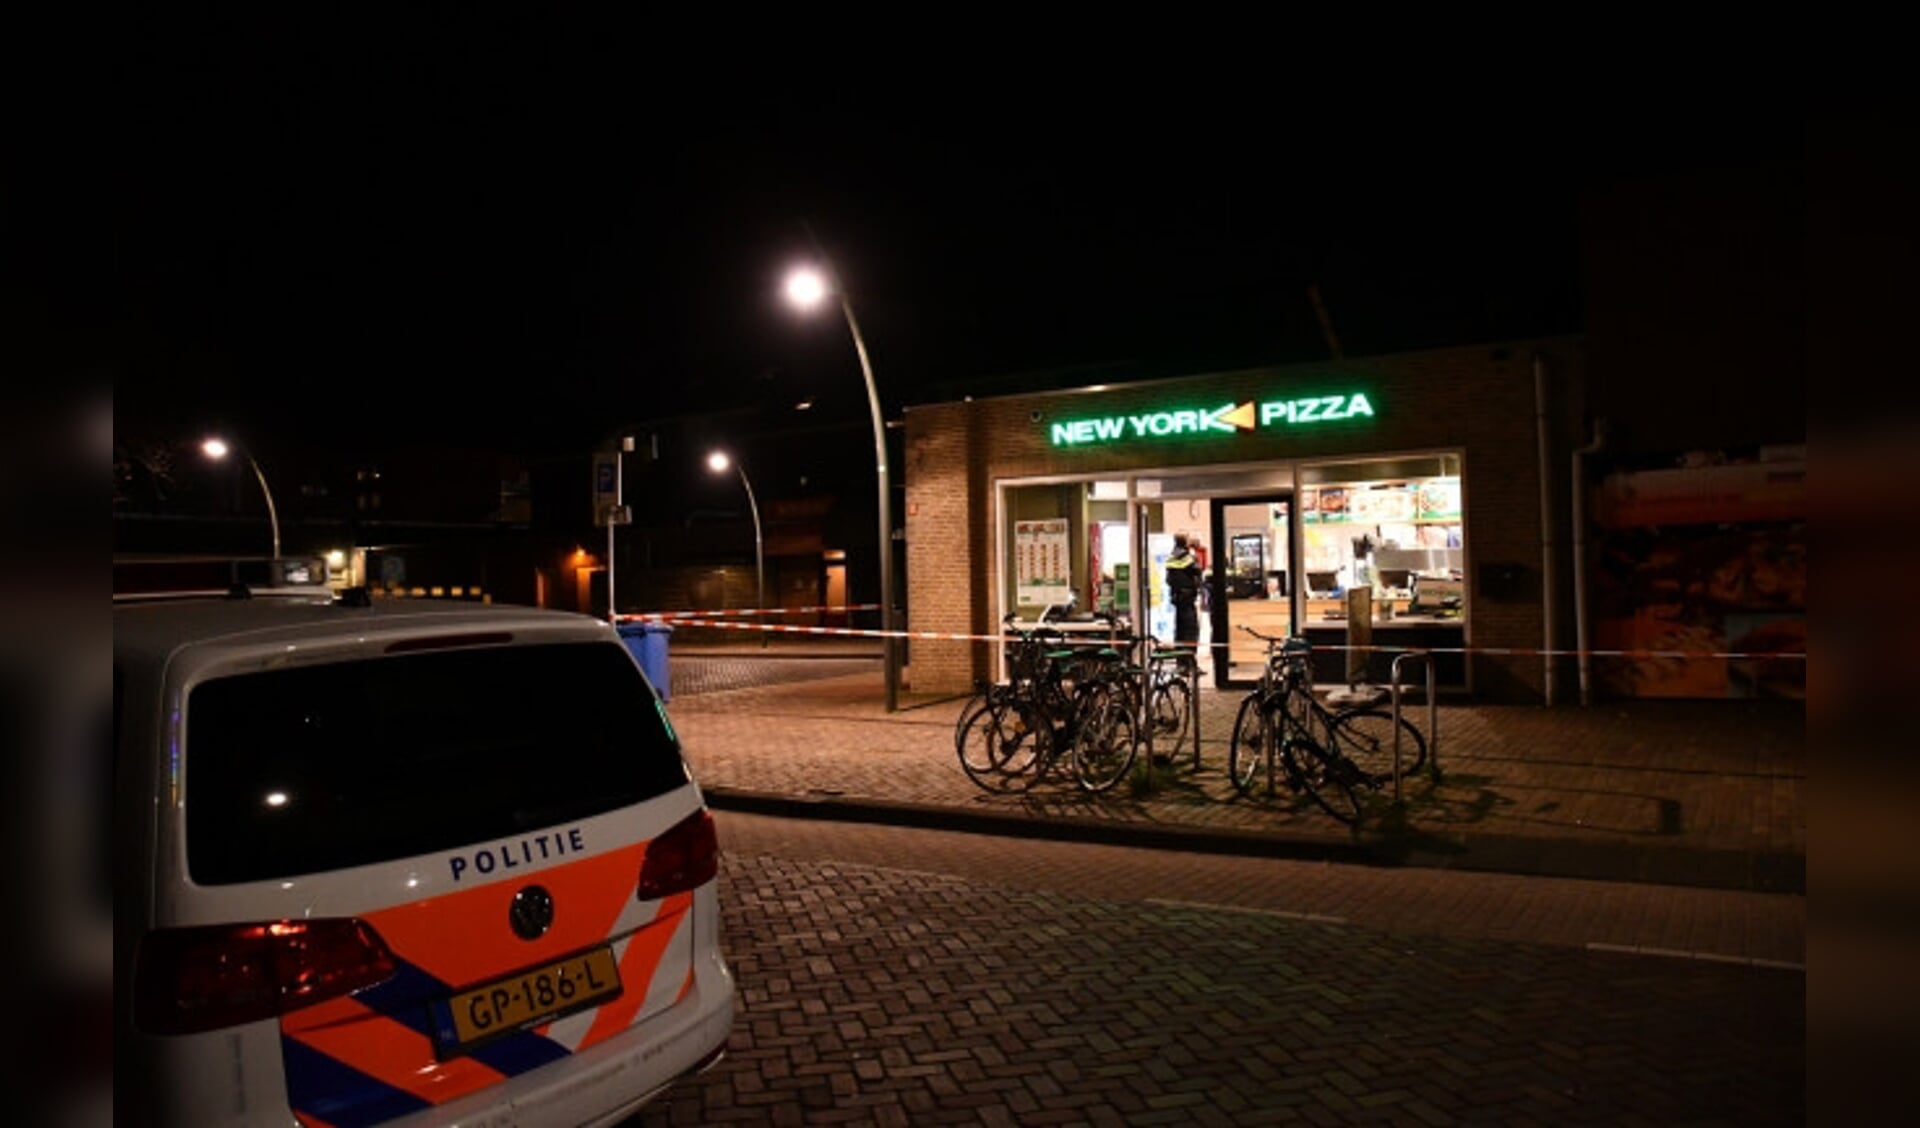  Politie bij New York Pizza in Dronten.